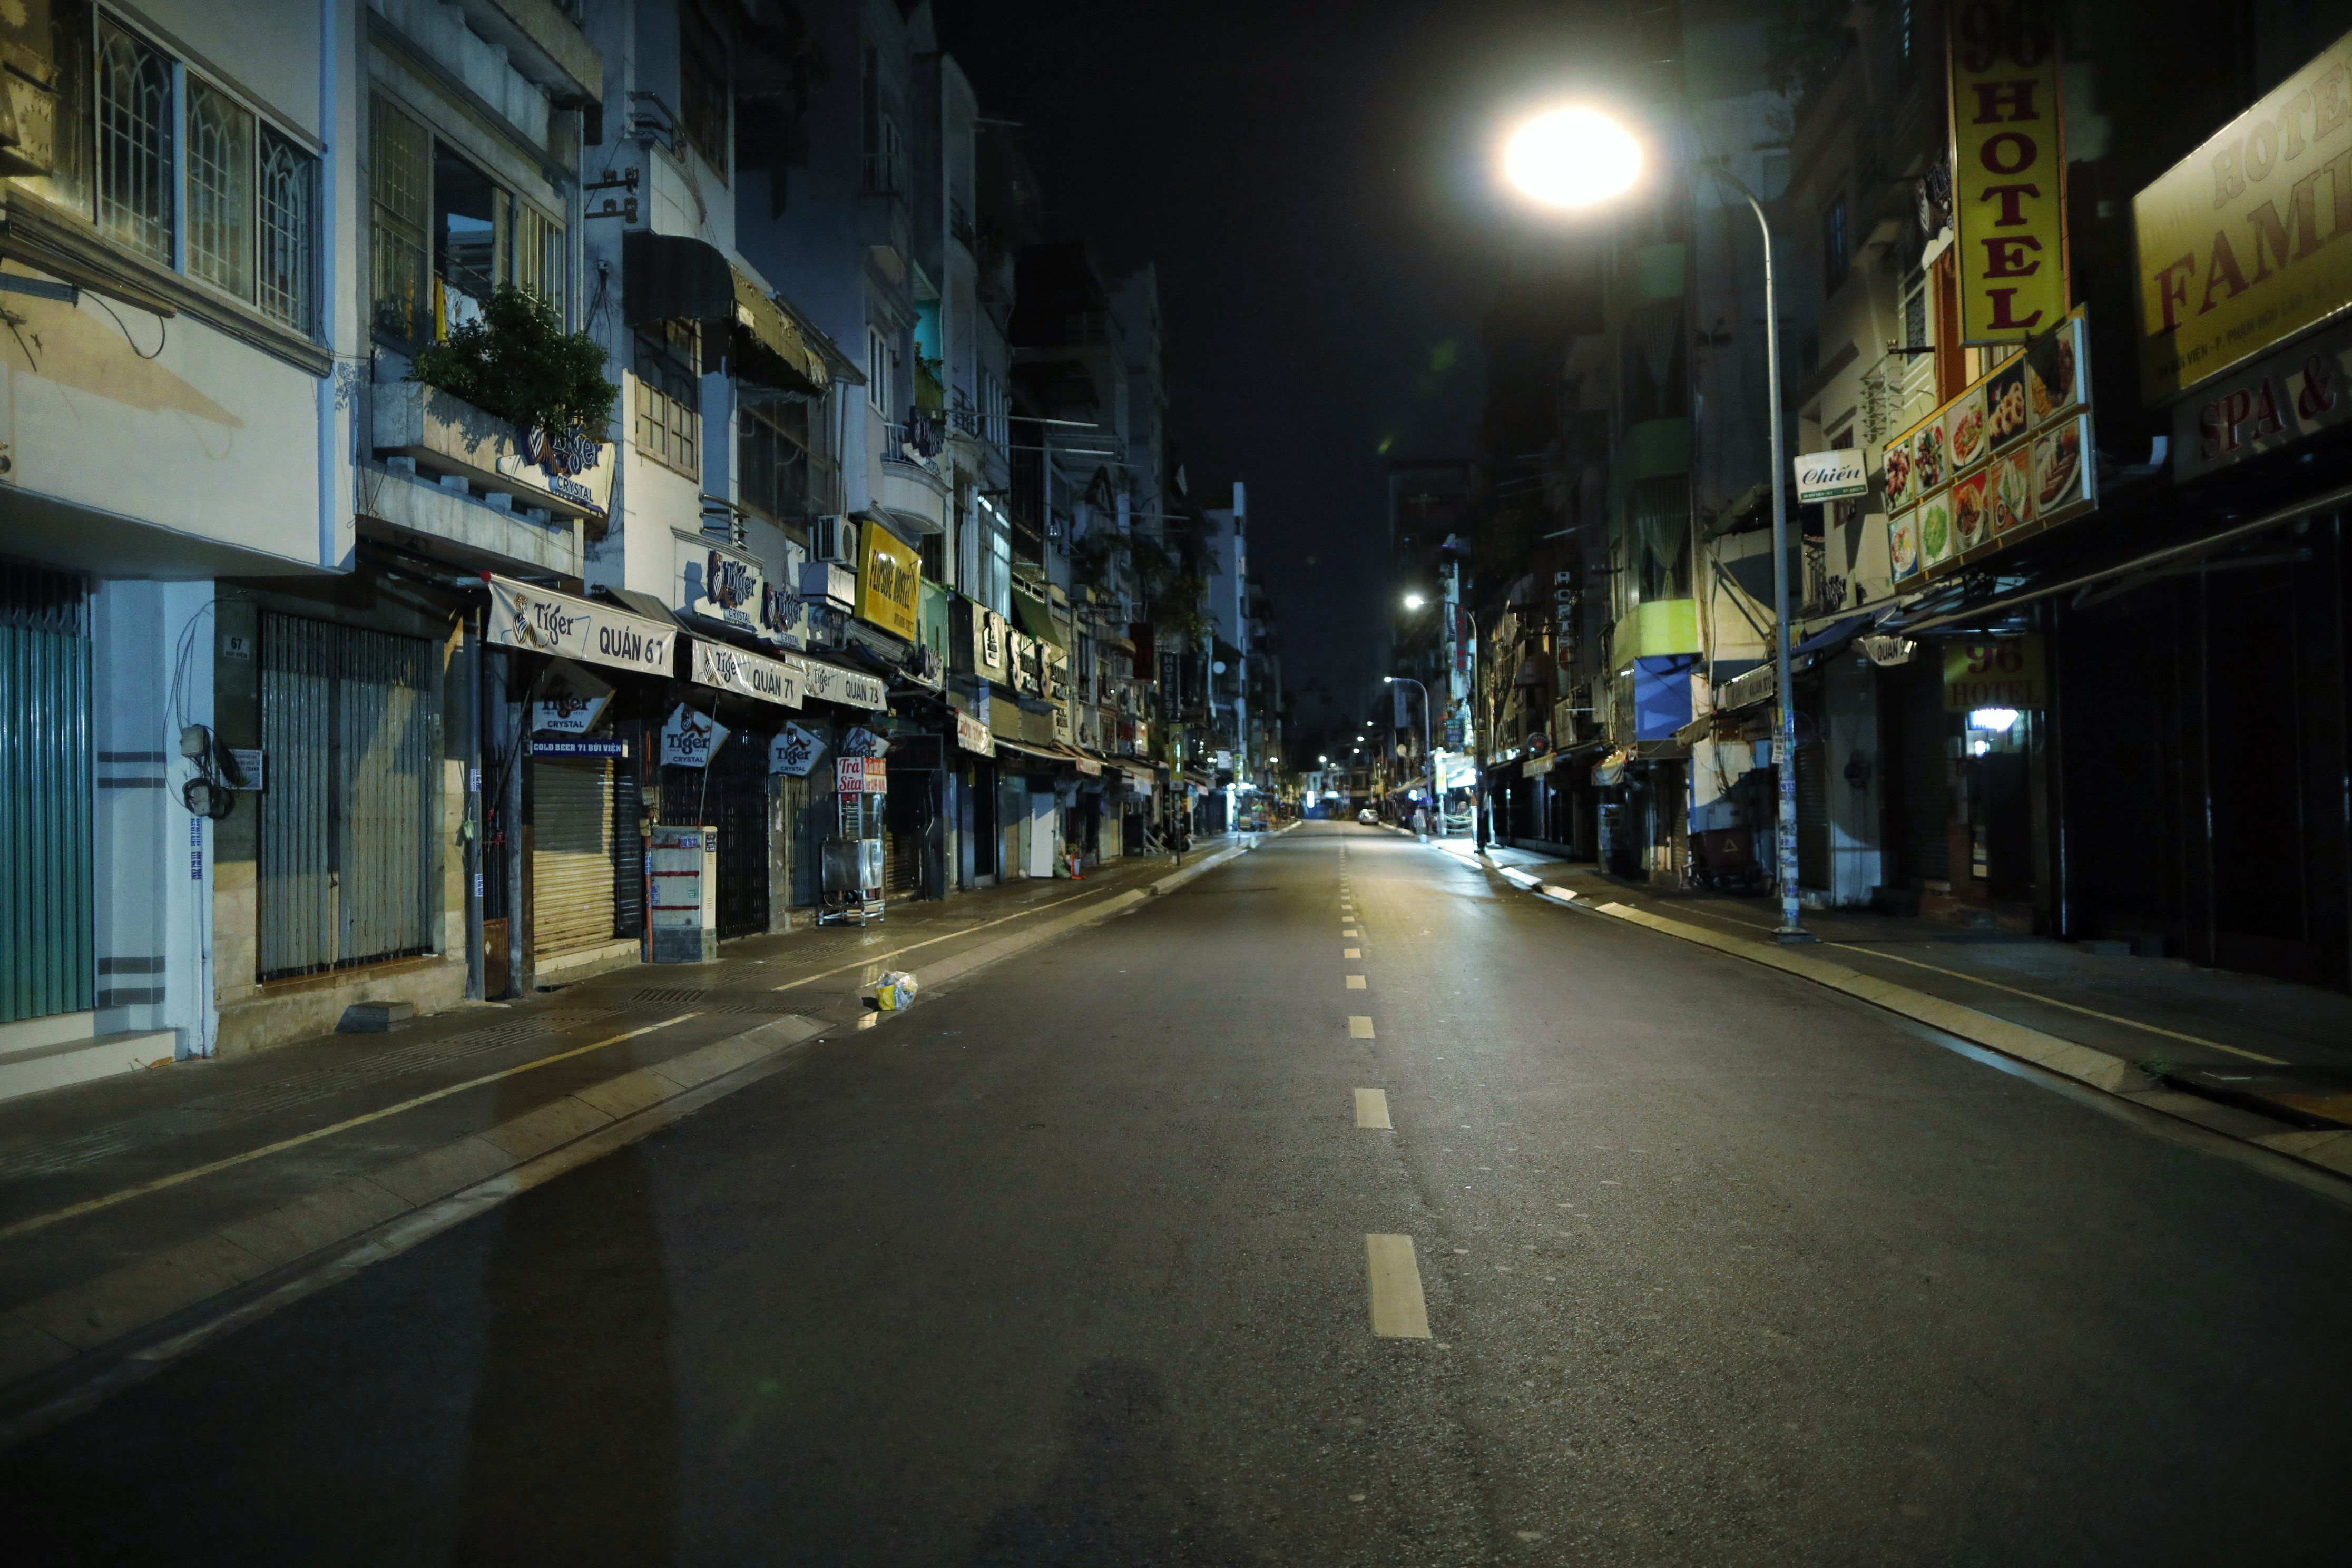 Hãy đến với ảnh đường phố không người tại TP.HCM để trải nghiệm cảm giác yên bình và đầy thư thái giữa phố thị ồn ào. Hình ảnh sẽ giúp bạn tìm thấy những góc phố đẹp nhất của Thành phố mang đậm chất Sài Gòn xưa.